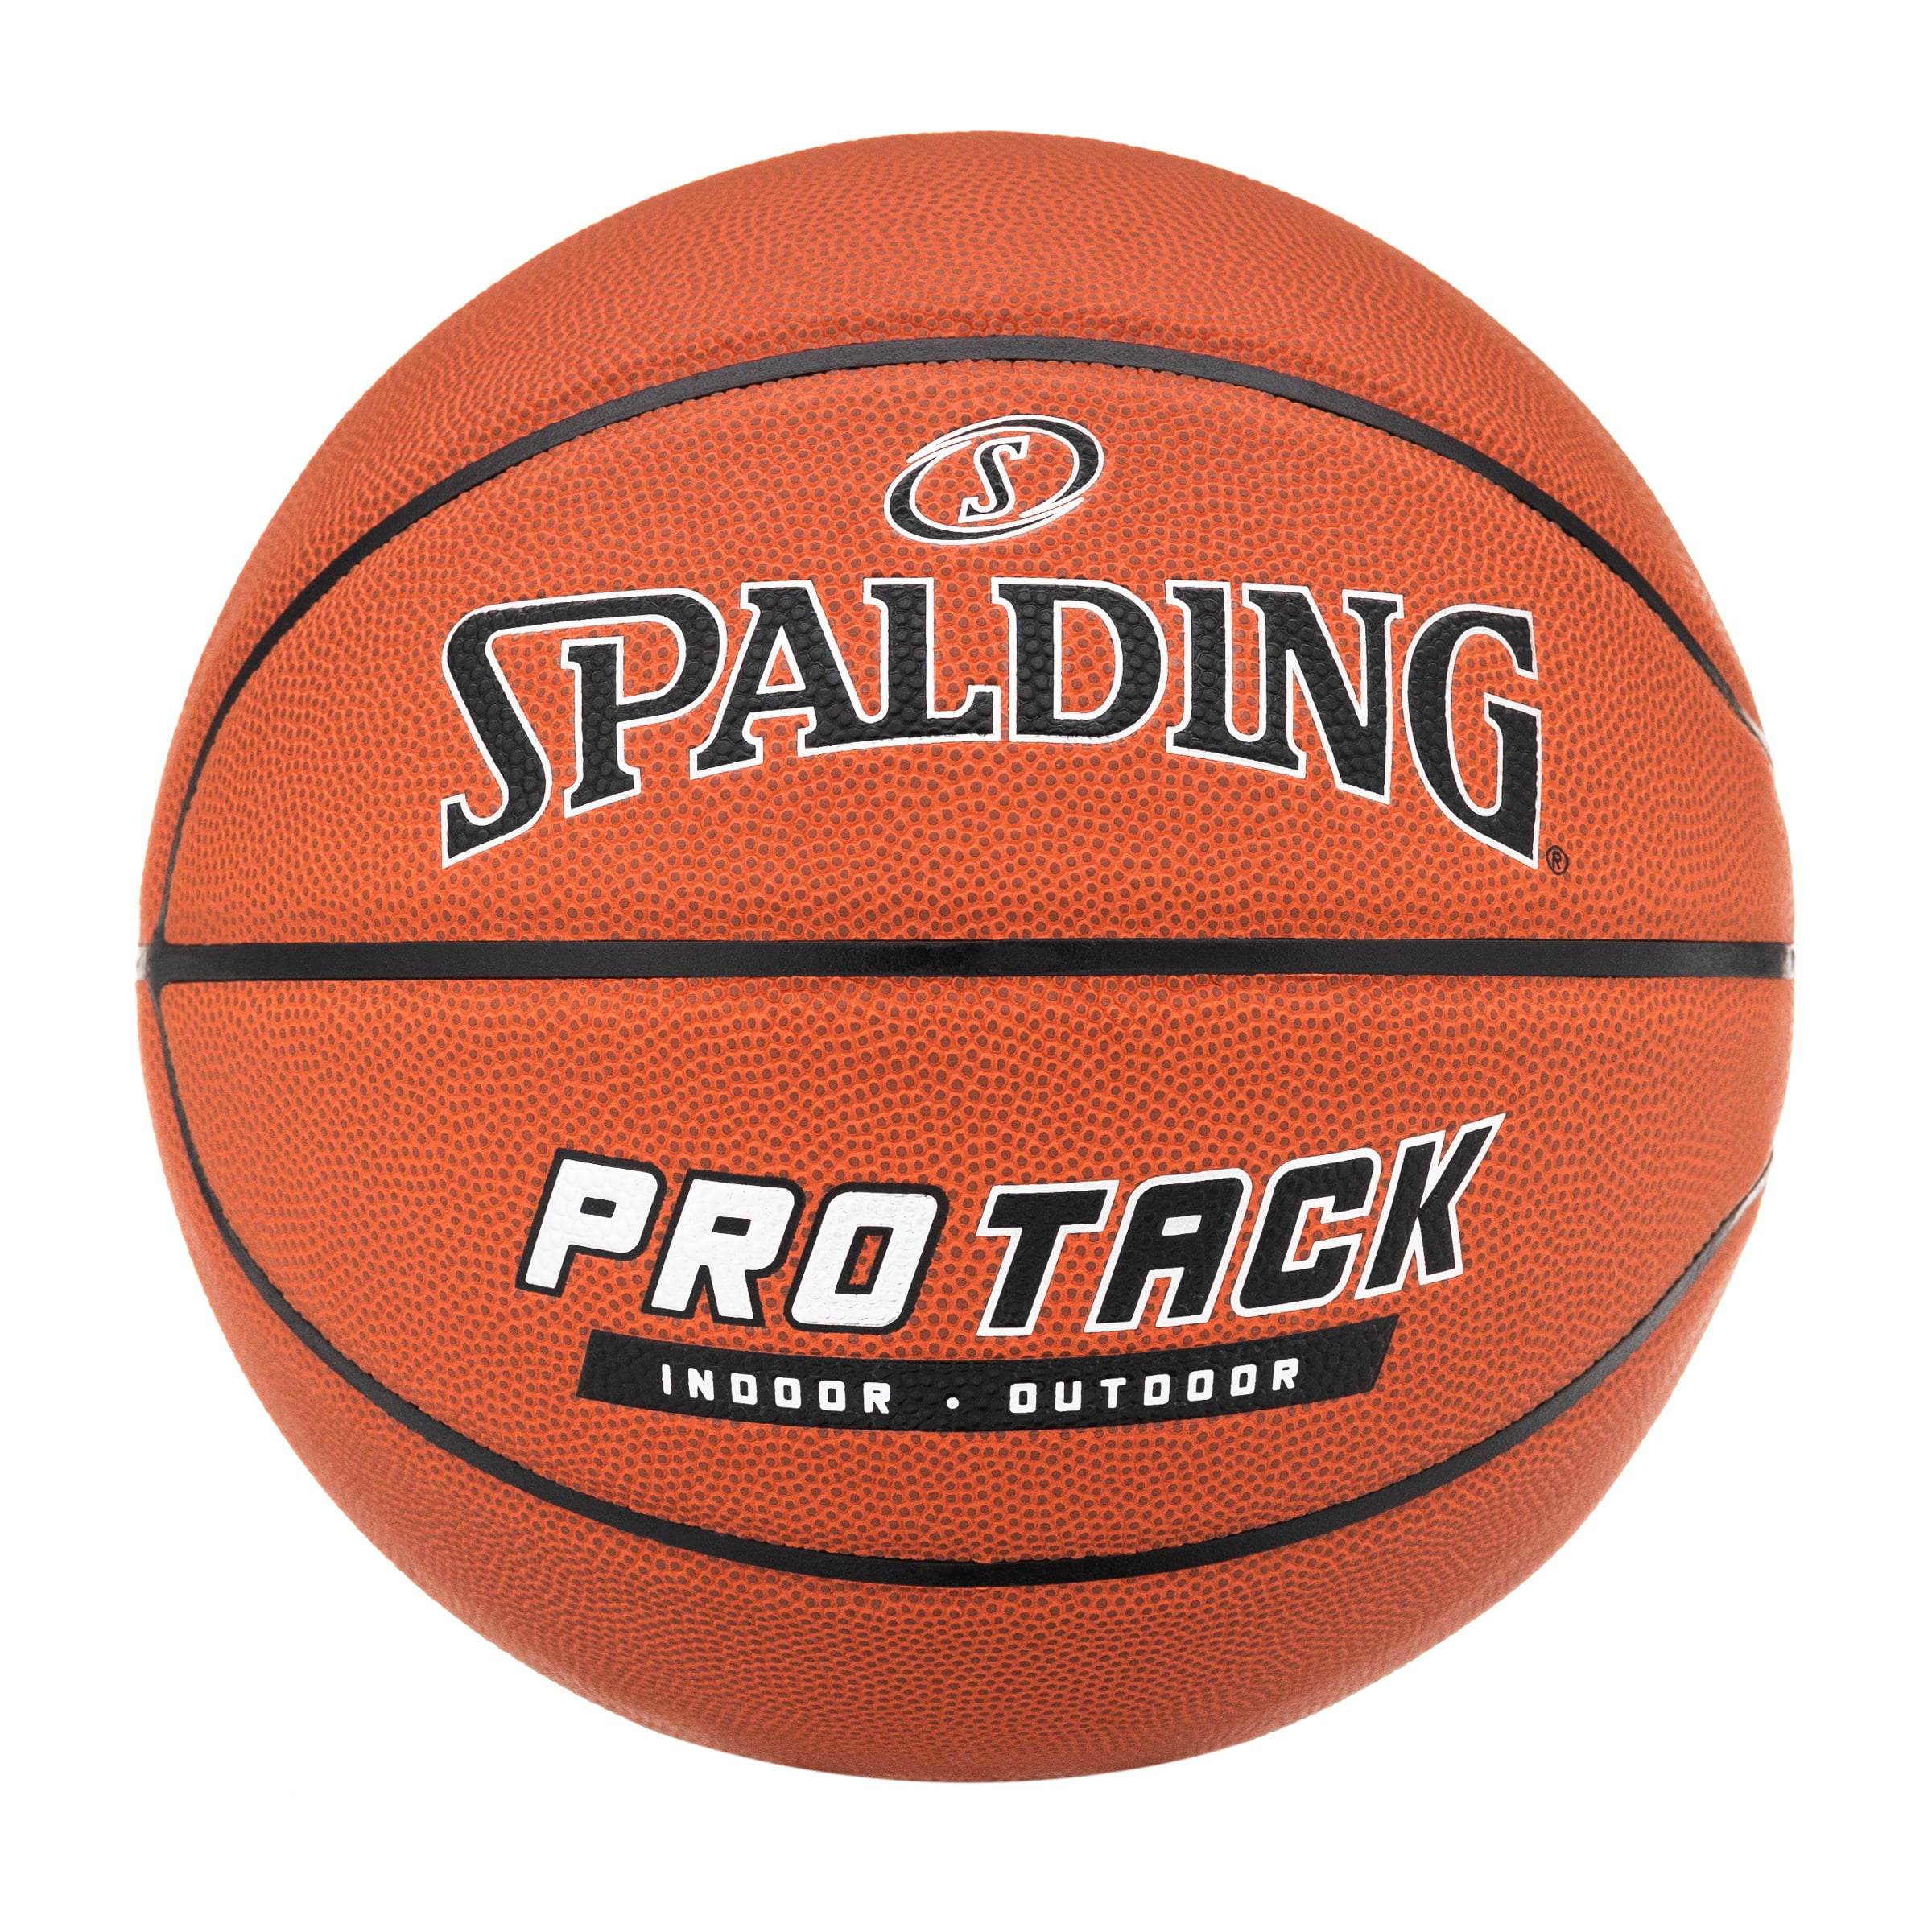 Spalding Basketbälle Größe 7 indoor/outdoor 